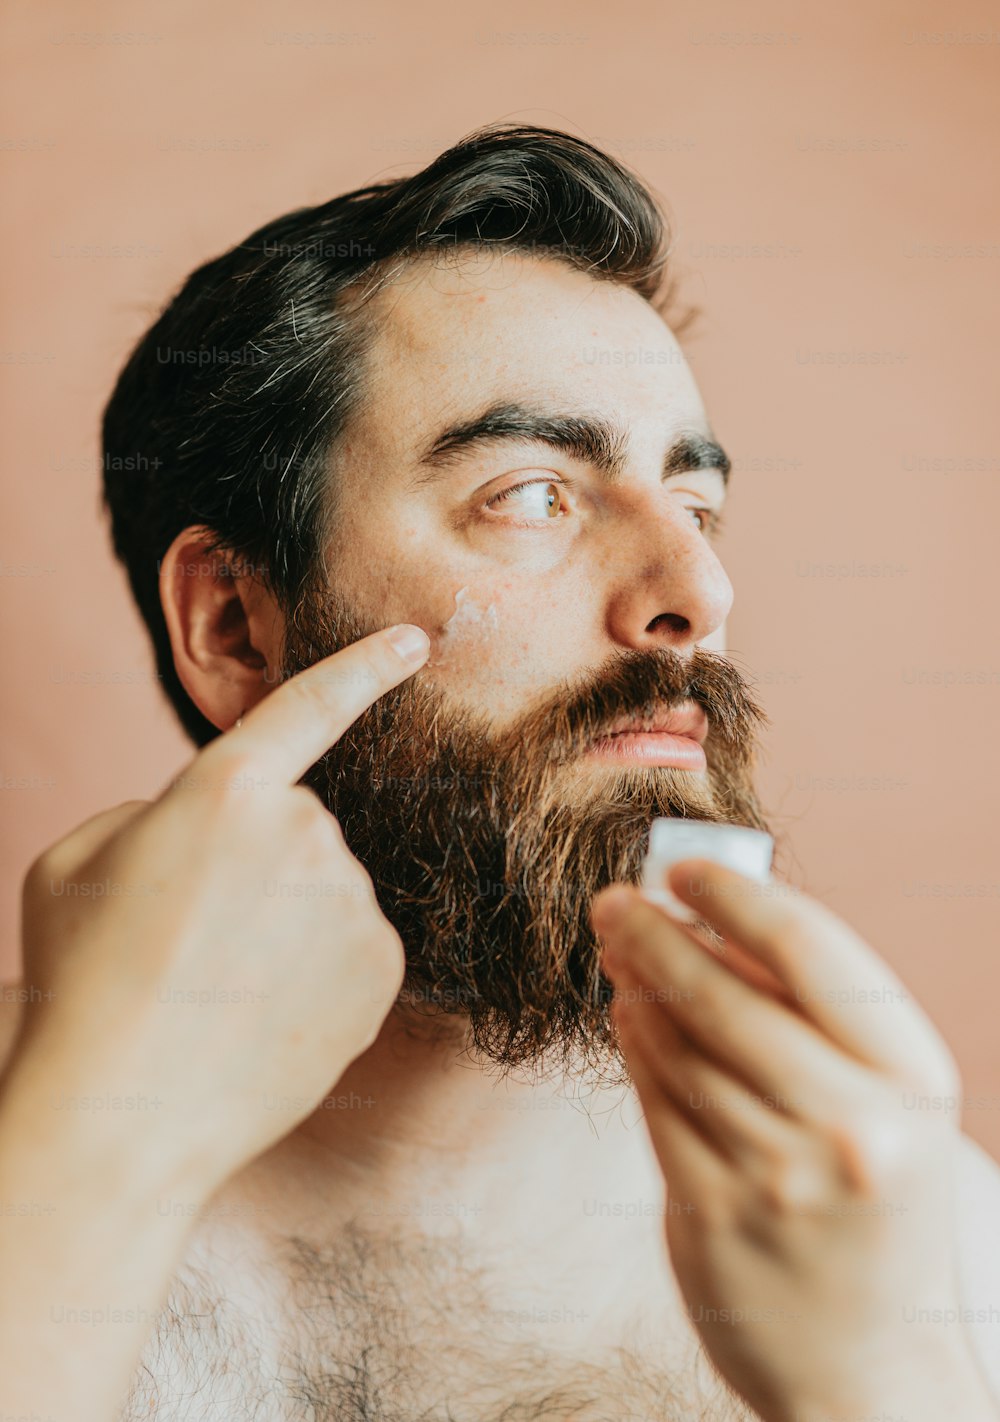 Un homme avec une barbe se brosse les dents